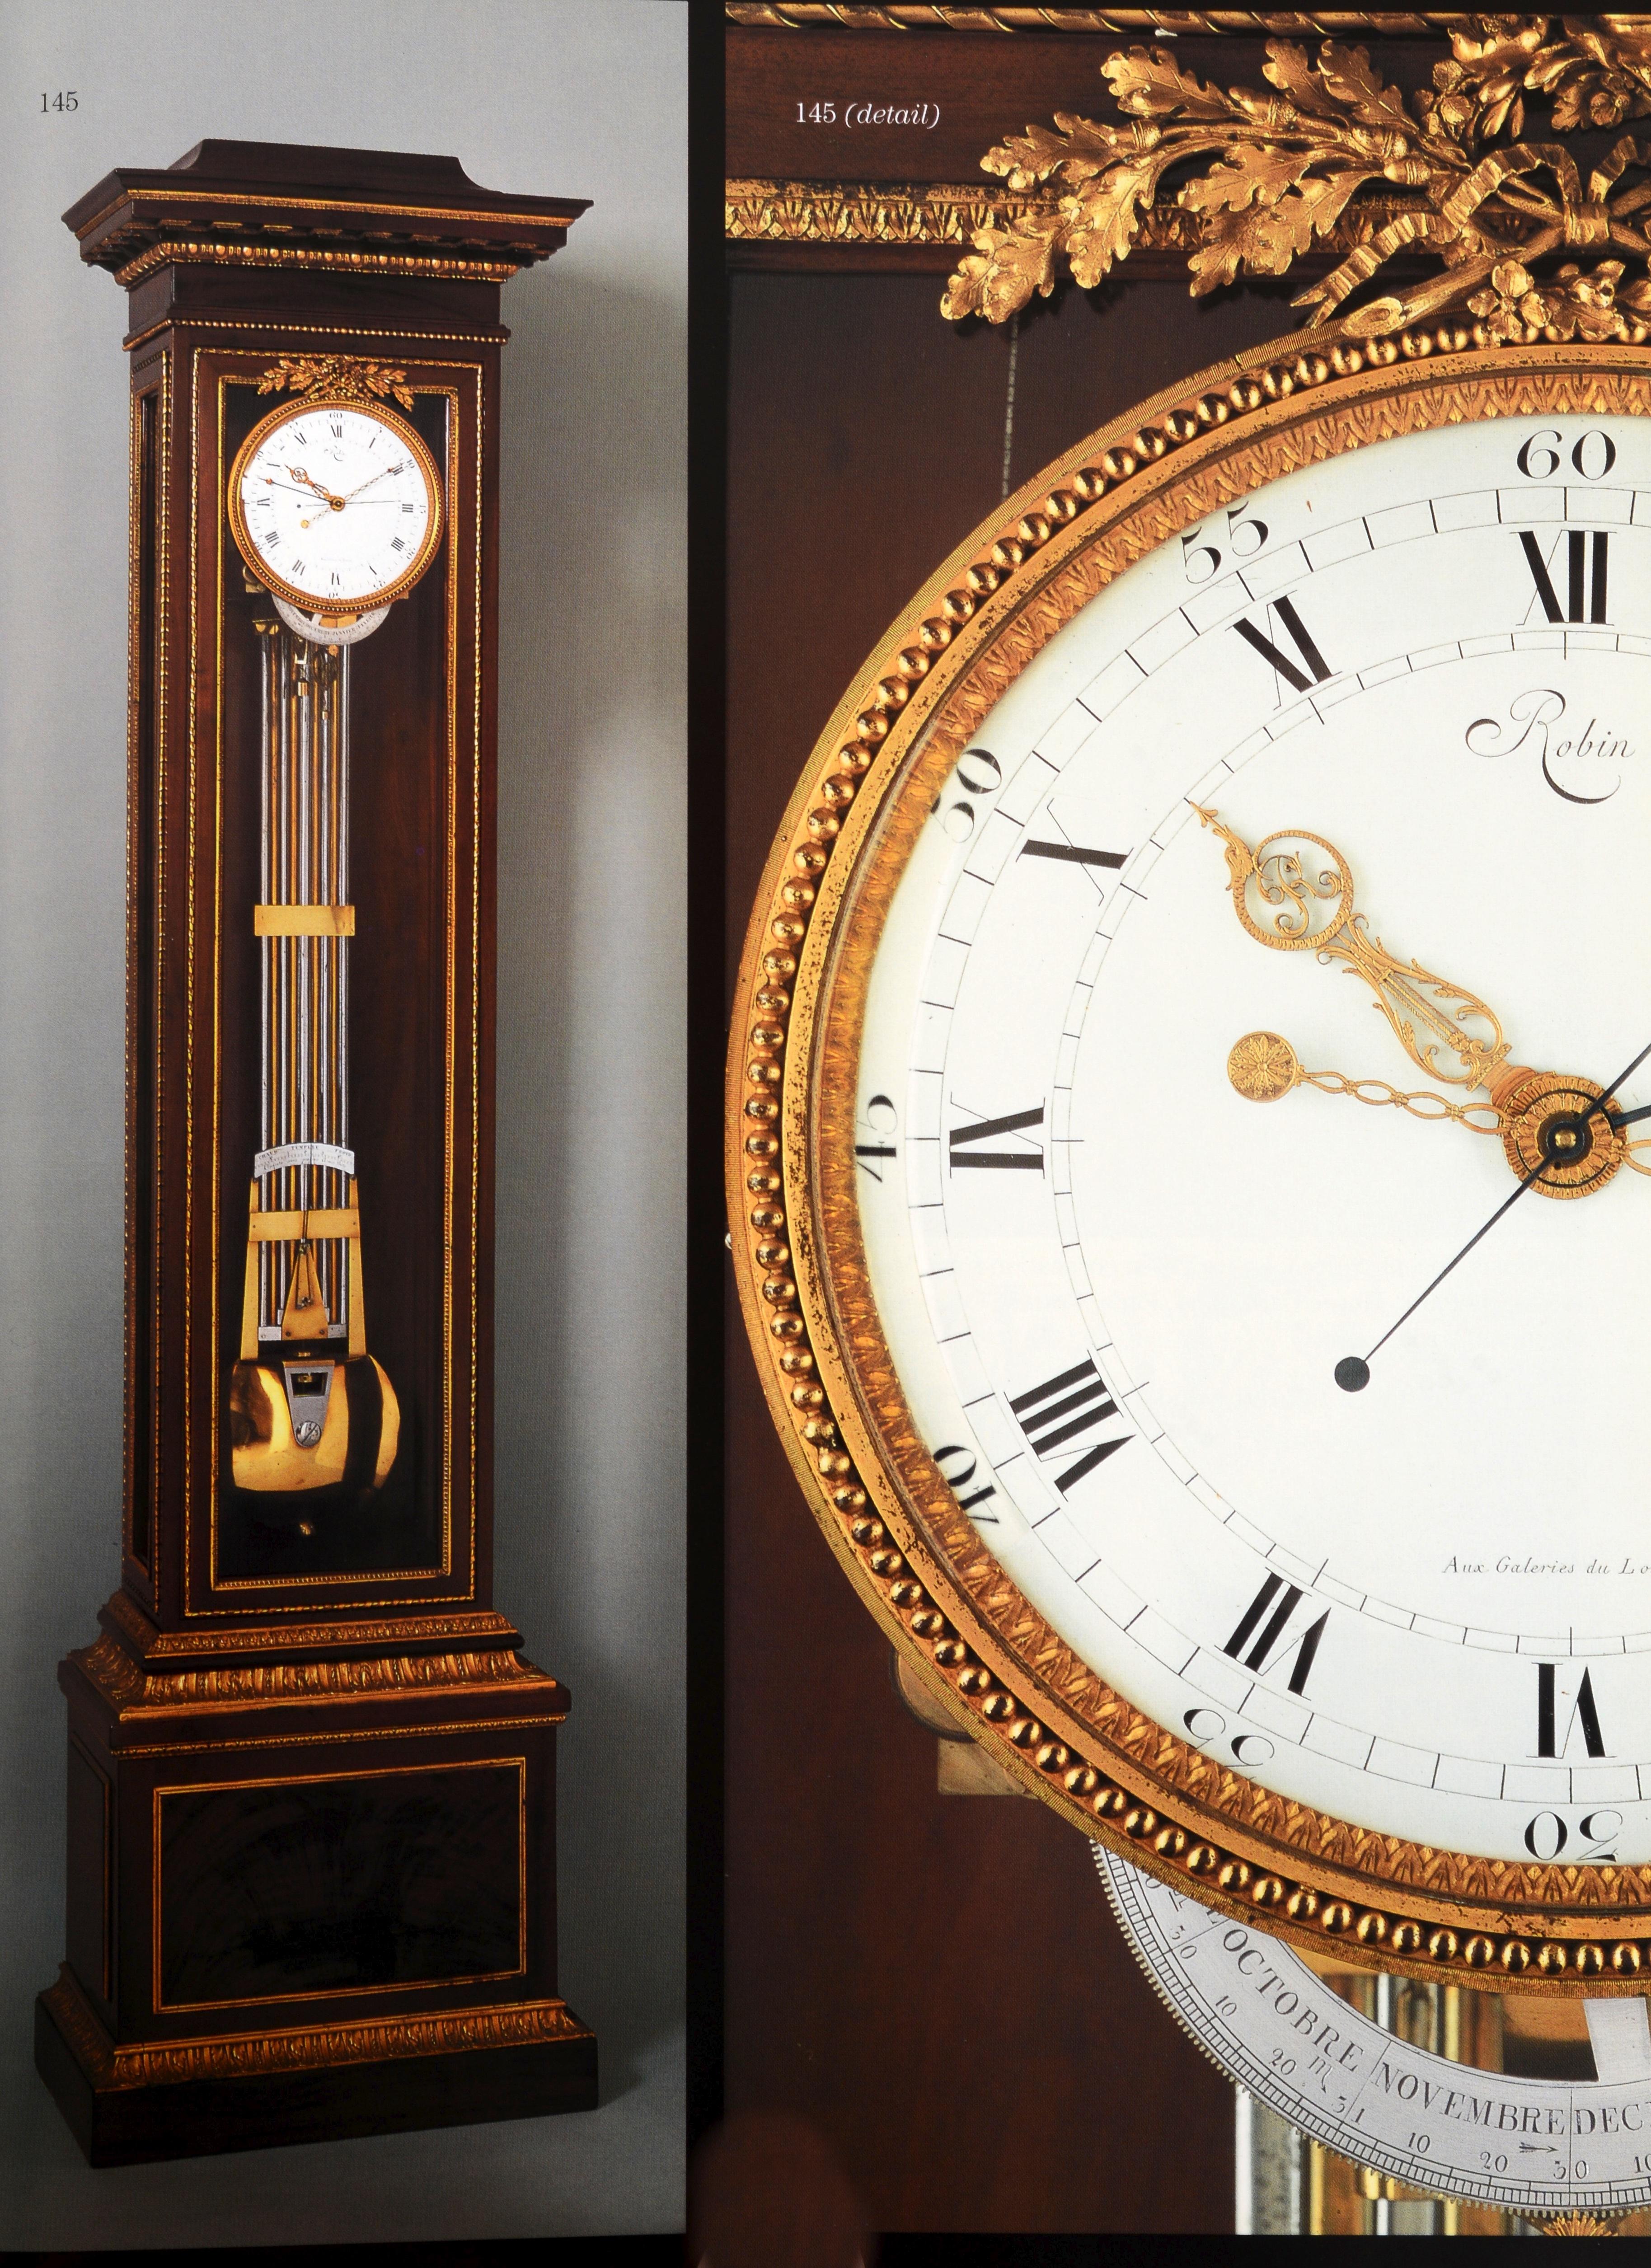 Collection d'horloges du juge Warren Shepro : Sotheby's NY, 26 avril 2001. 1ère édition, couverture rigide avec jaquette. Le catalogue d'une célèbre collection vendue à New York. Shepro collectionnait les premières horloges de table européennes, les